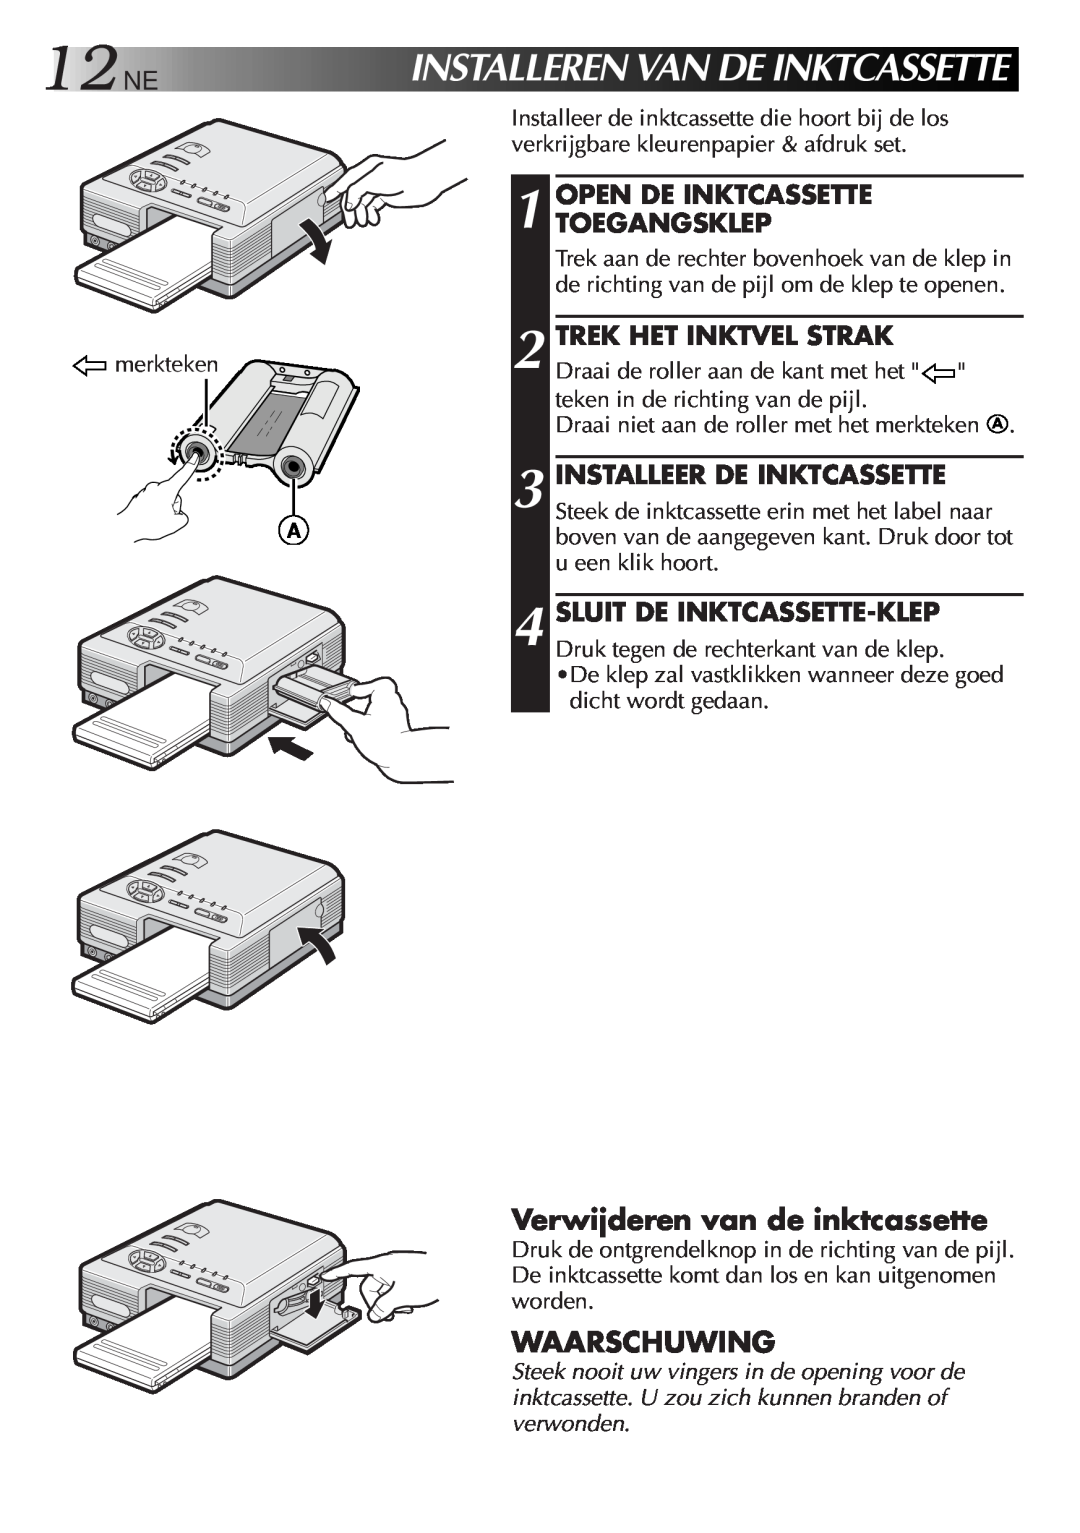 JVC GV-DT3 manual 12NE, Installerenvandeinktcassette, Verwijderen van de inktcassette, Waarschuwing, Open De Inktcassette 